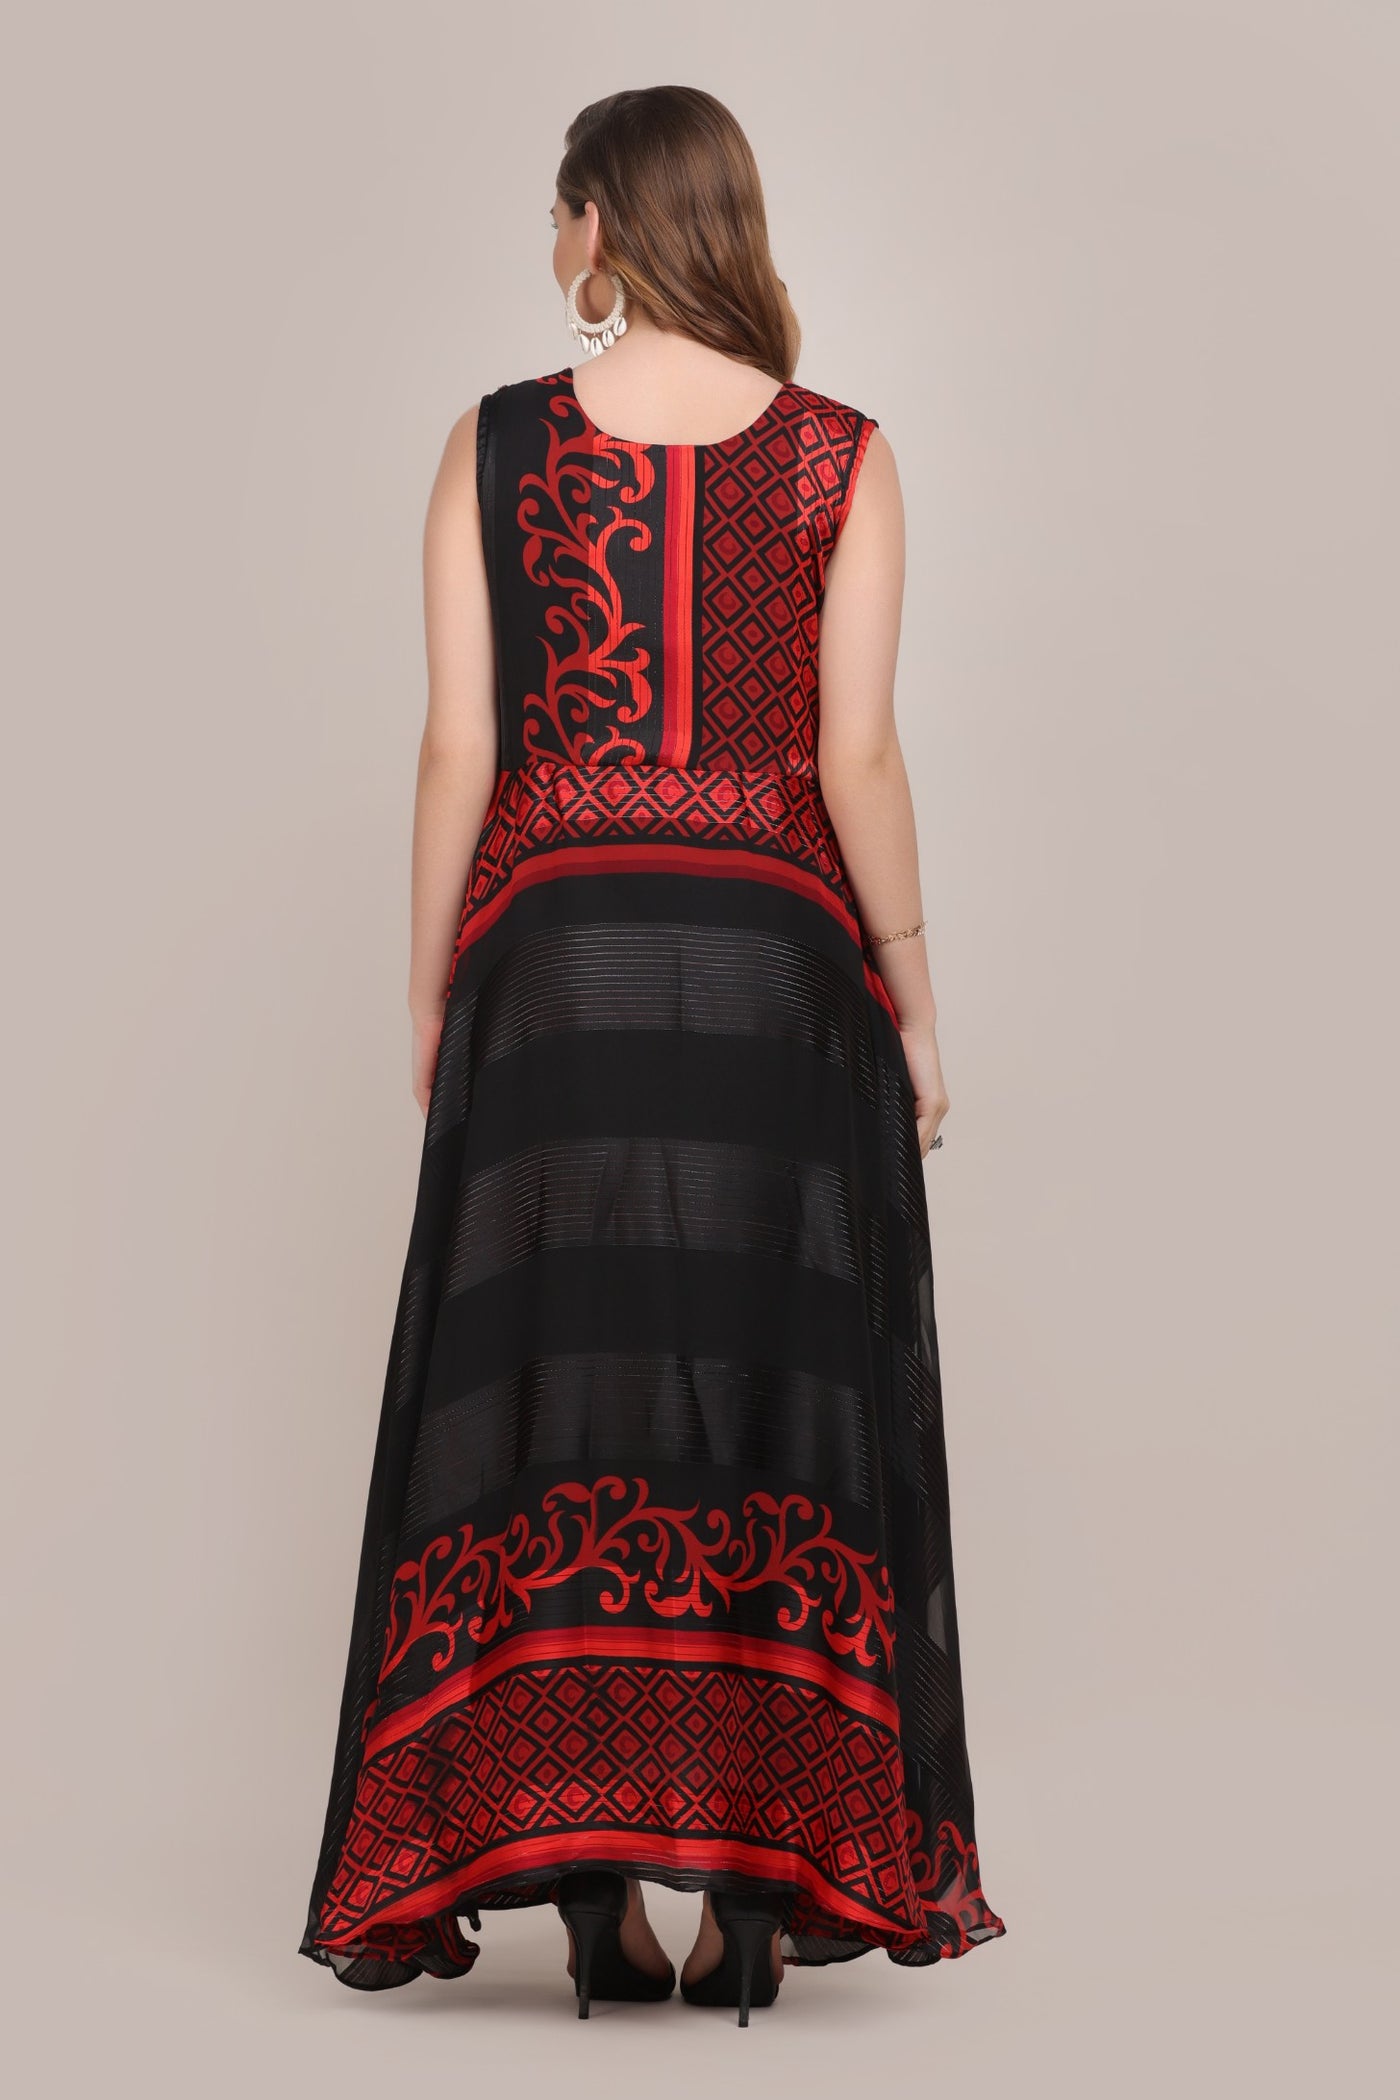 Beautiful red and black color geometrical motif printed kurti